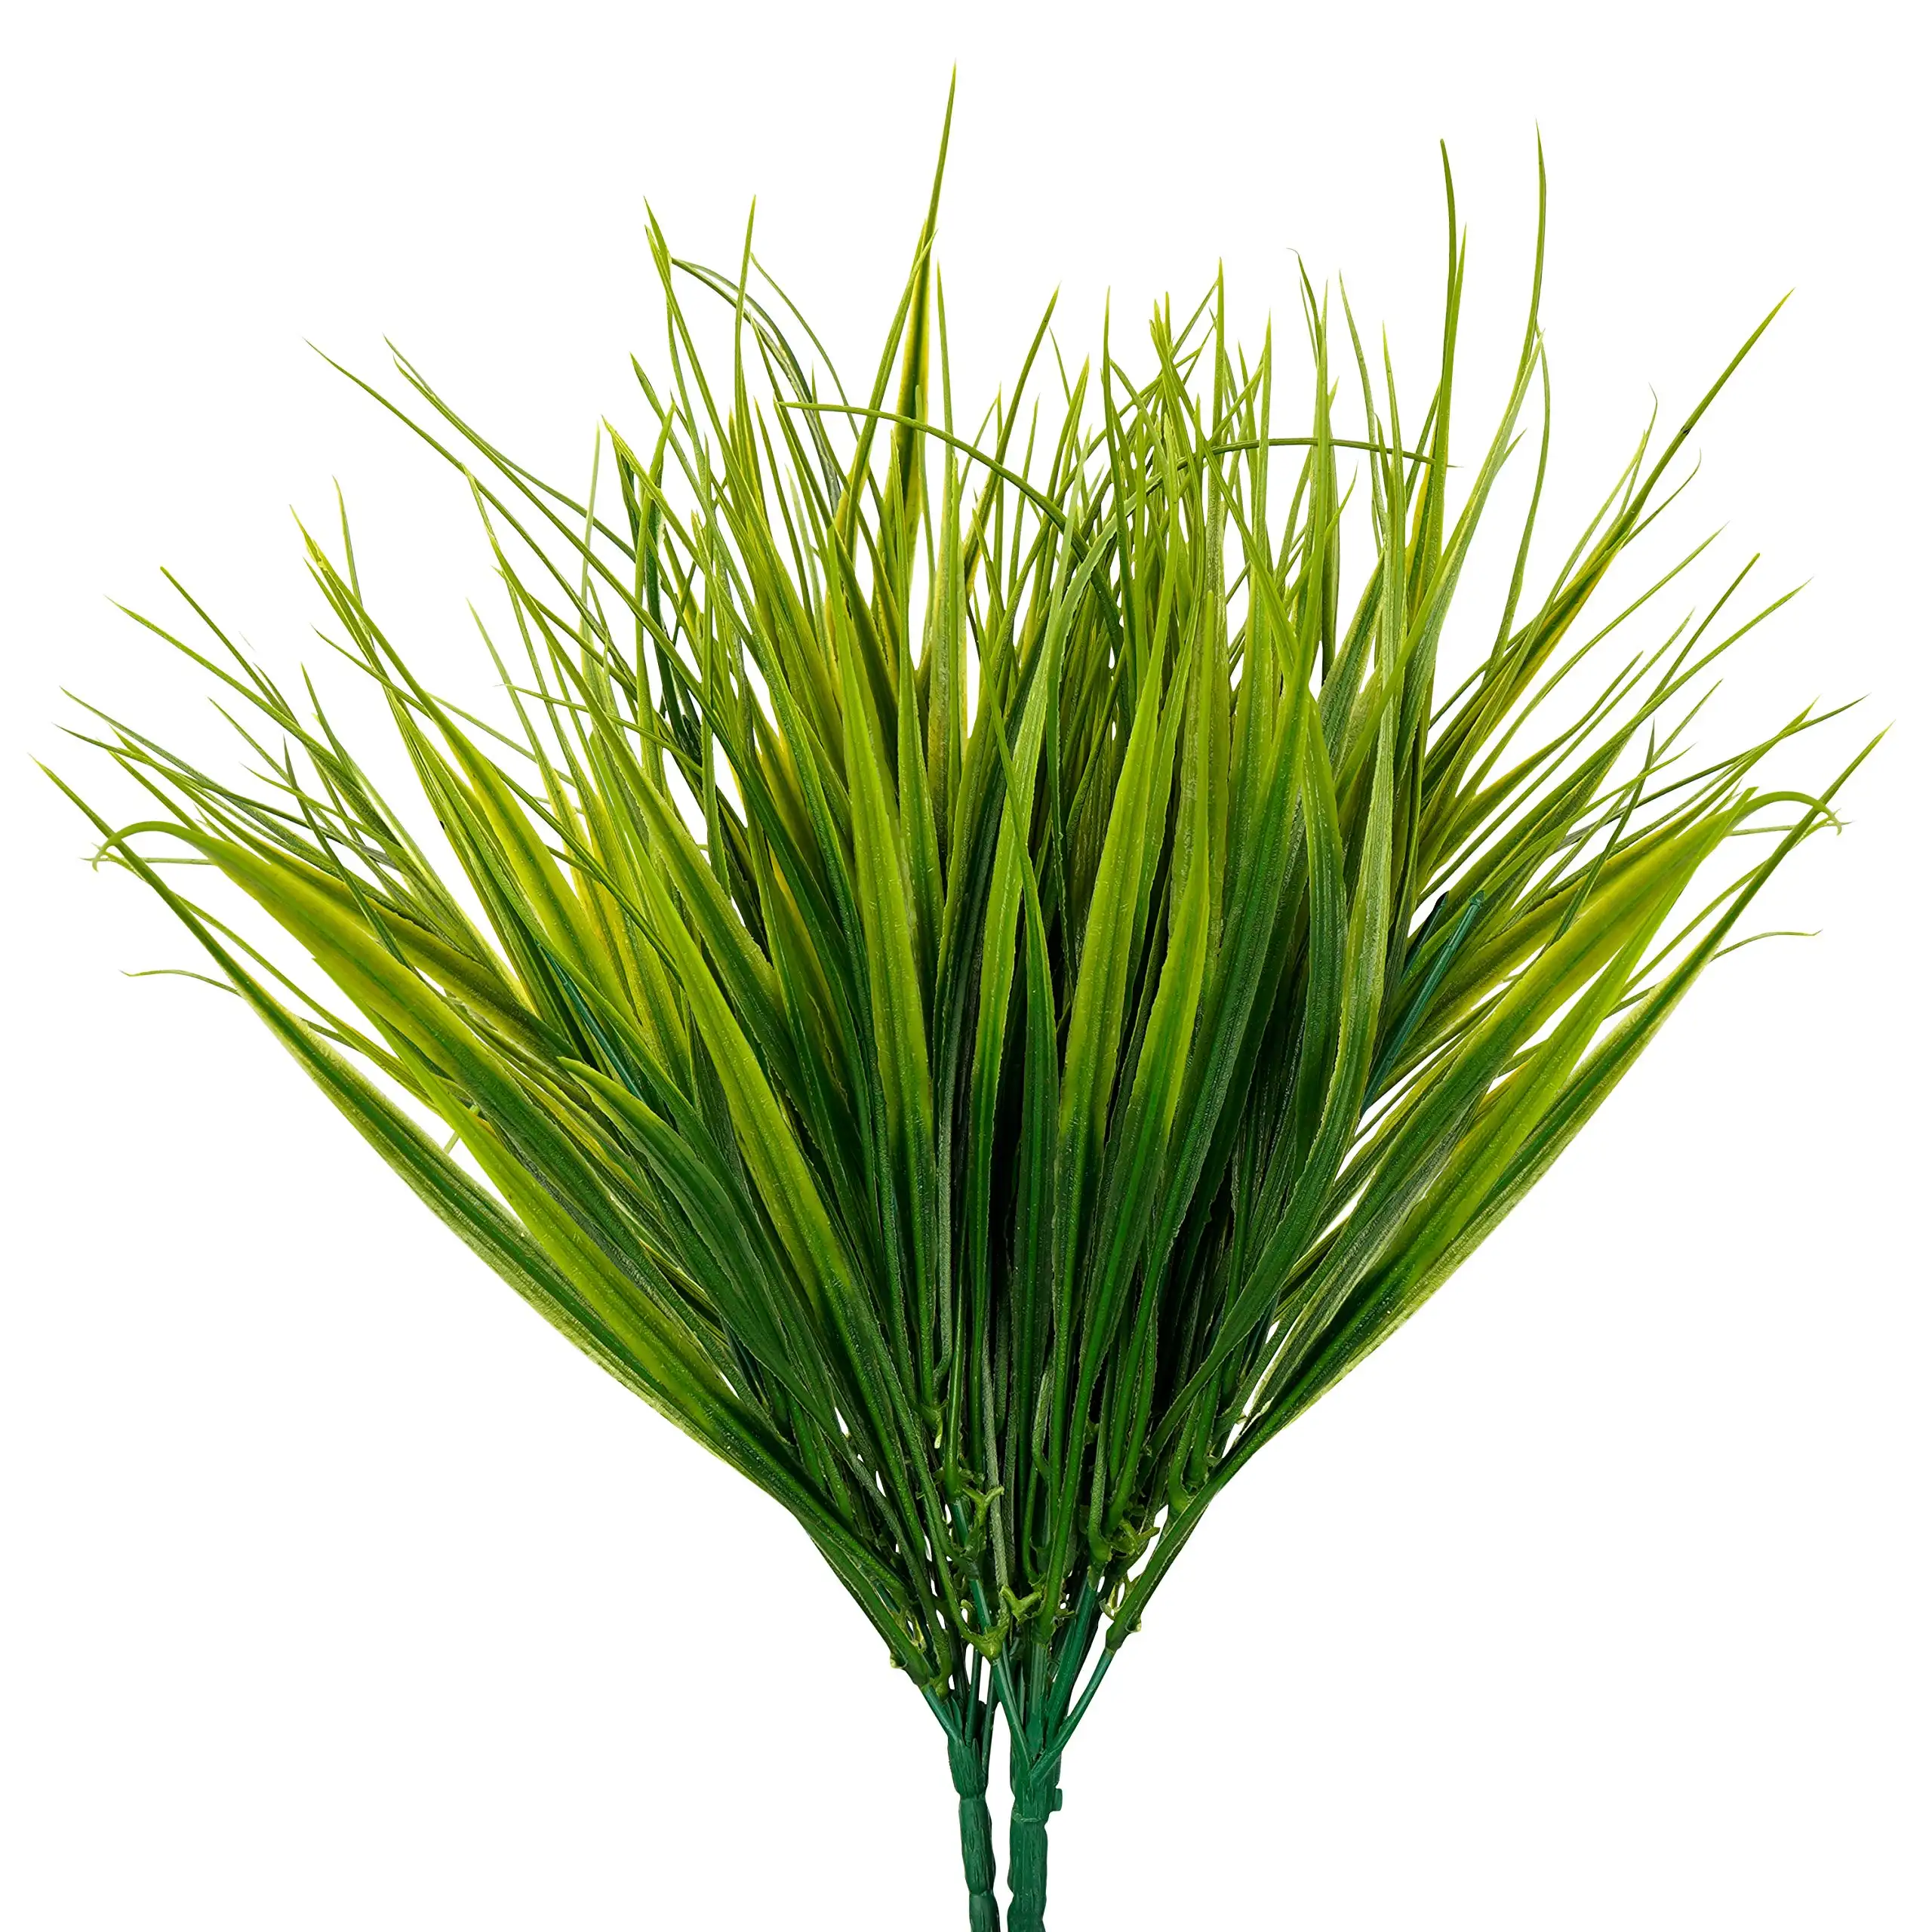 NISEVEN yüksek kalite 6 adet/takım yapay bitki buğday çim simülasyon yeşil dekorasyon için plastik yeşil bitki